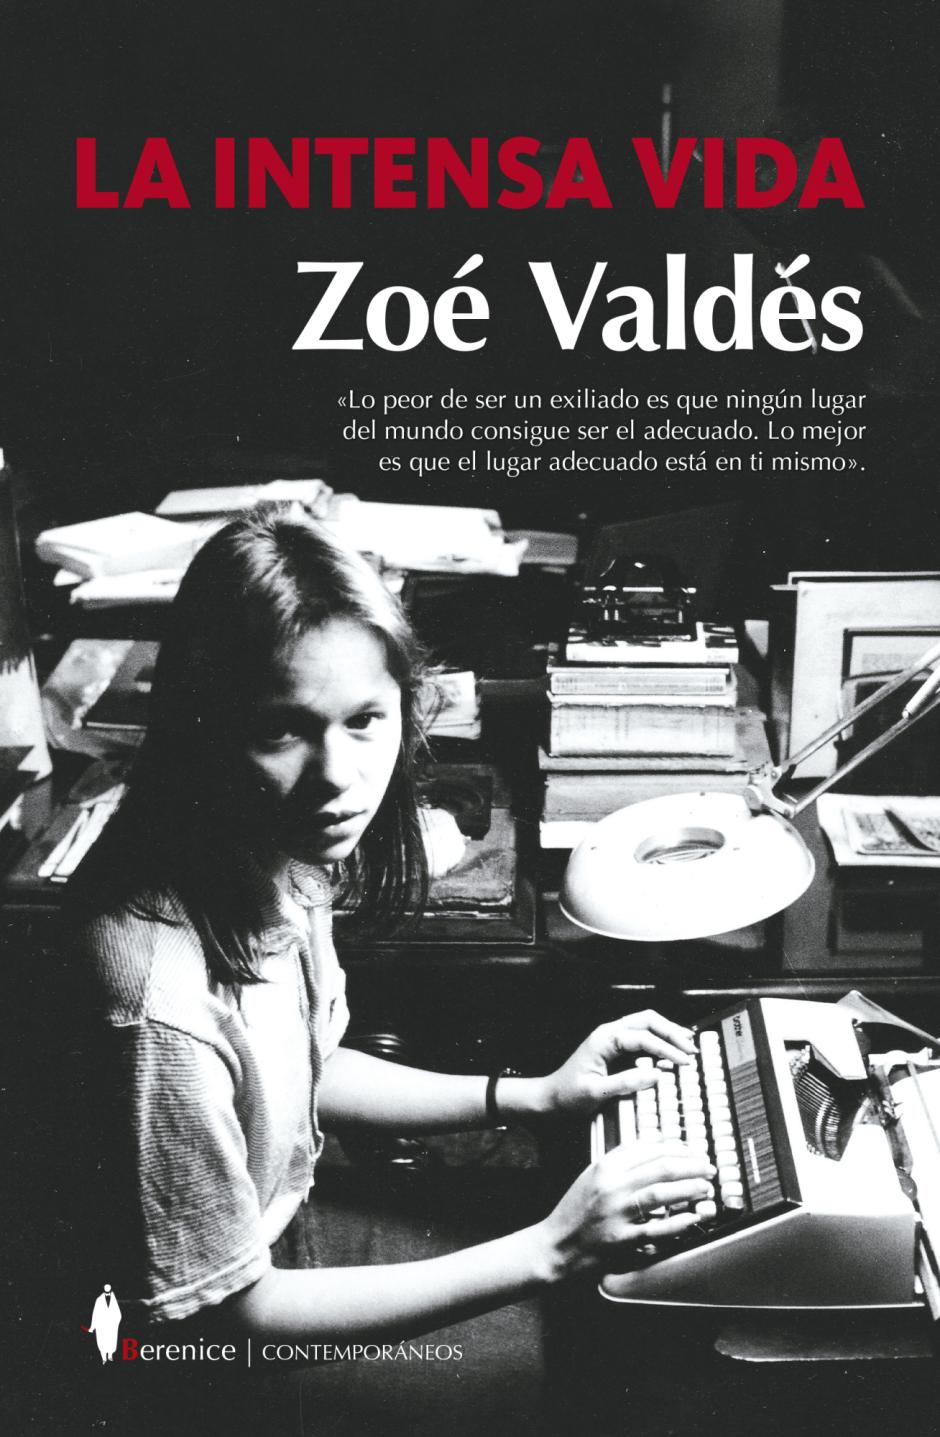 'La intensa vida' (Berenice) es el nuevo libro de Zoé Valdés